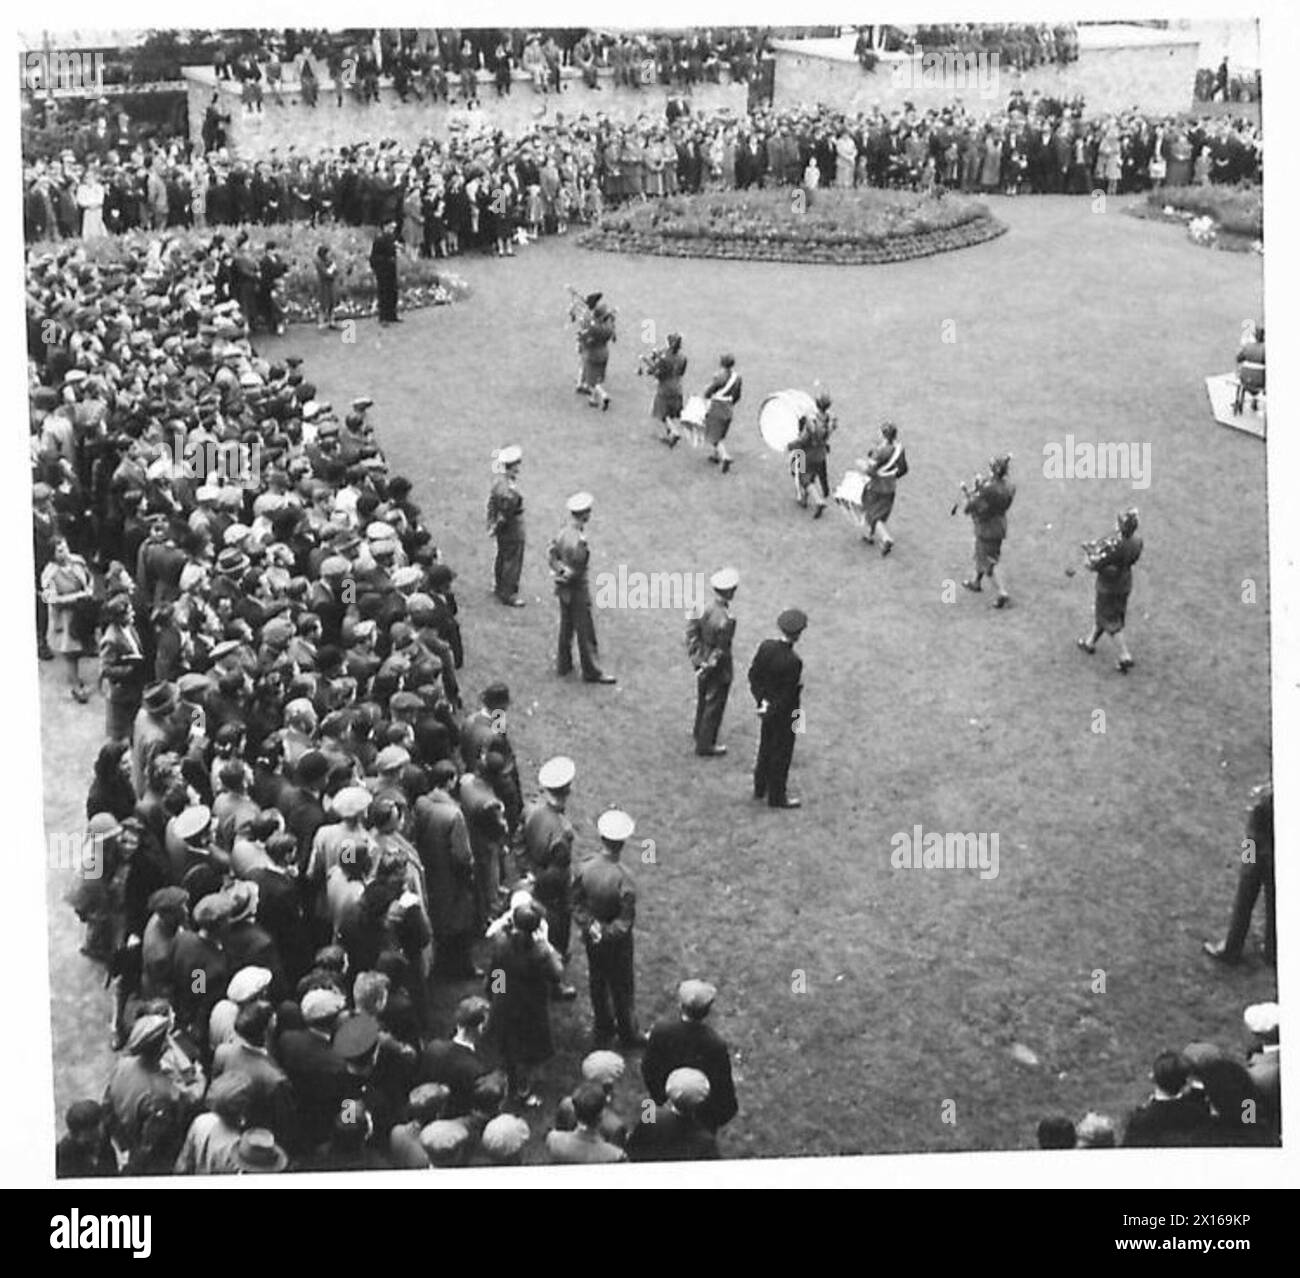 DIE ATS-BAND GIBT IHRE ABSCHIEDSDARBIETUNG: Eine ATS Piper's Band spielt vor riesigen Menschenmengen auf dem Rasen des Rathauses, Belfast British Army Stockfoto